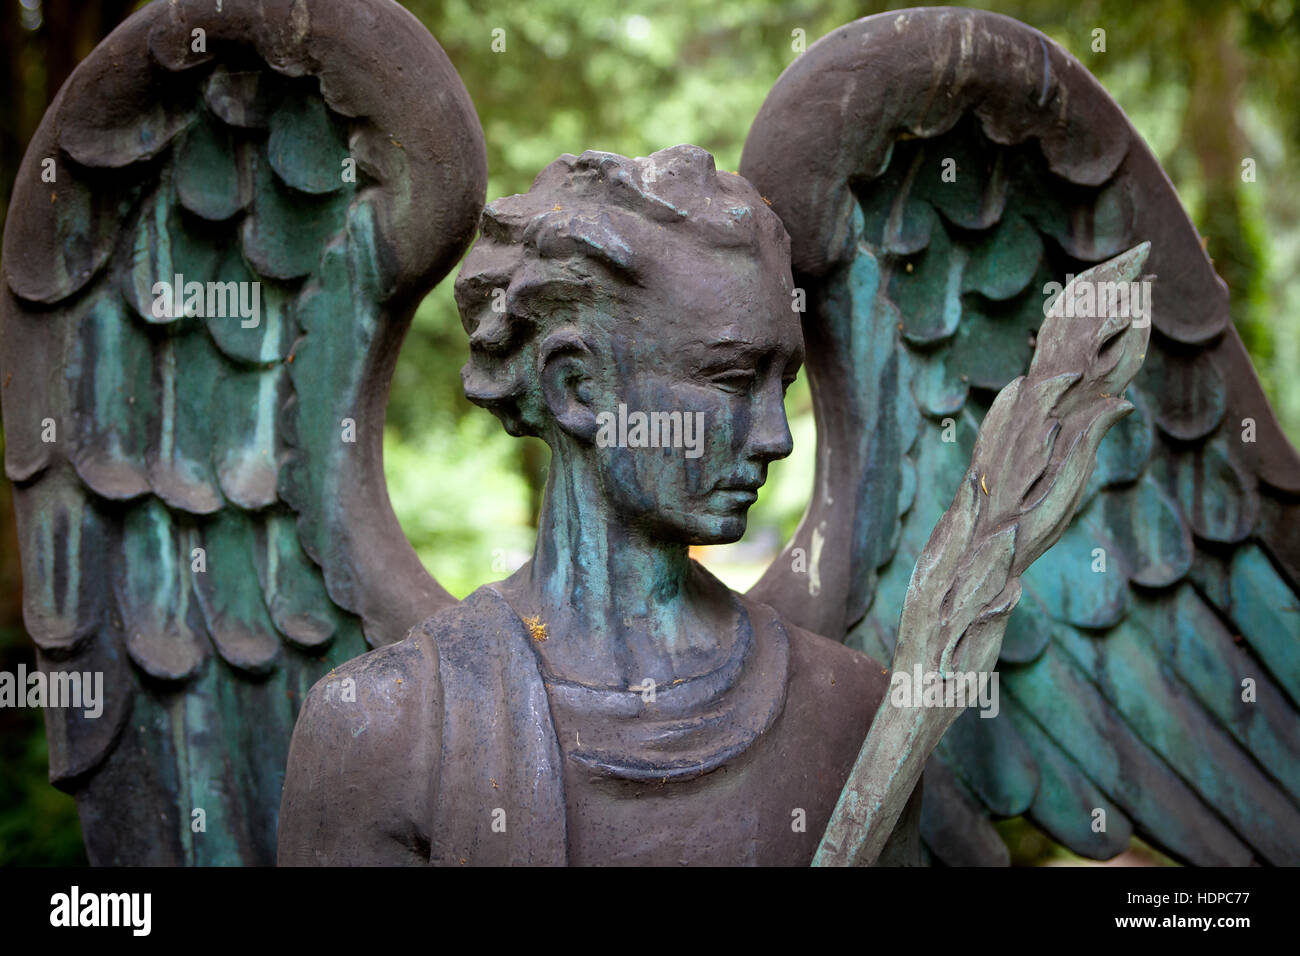 En Europa, Alemania, Colonia, ángel en el cementerio de Melaten. Foto de stock